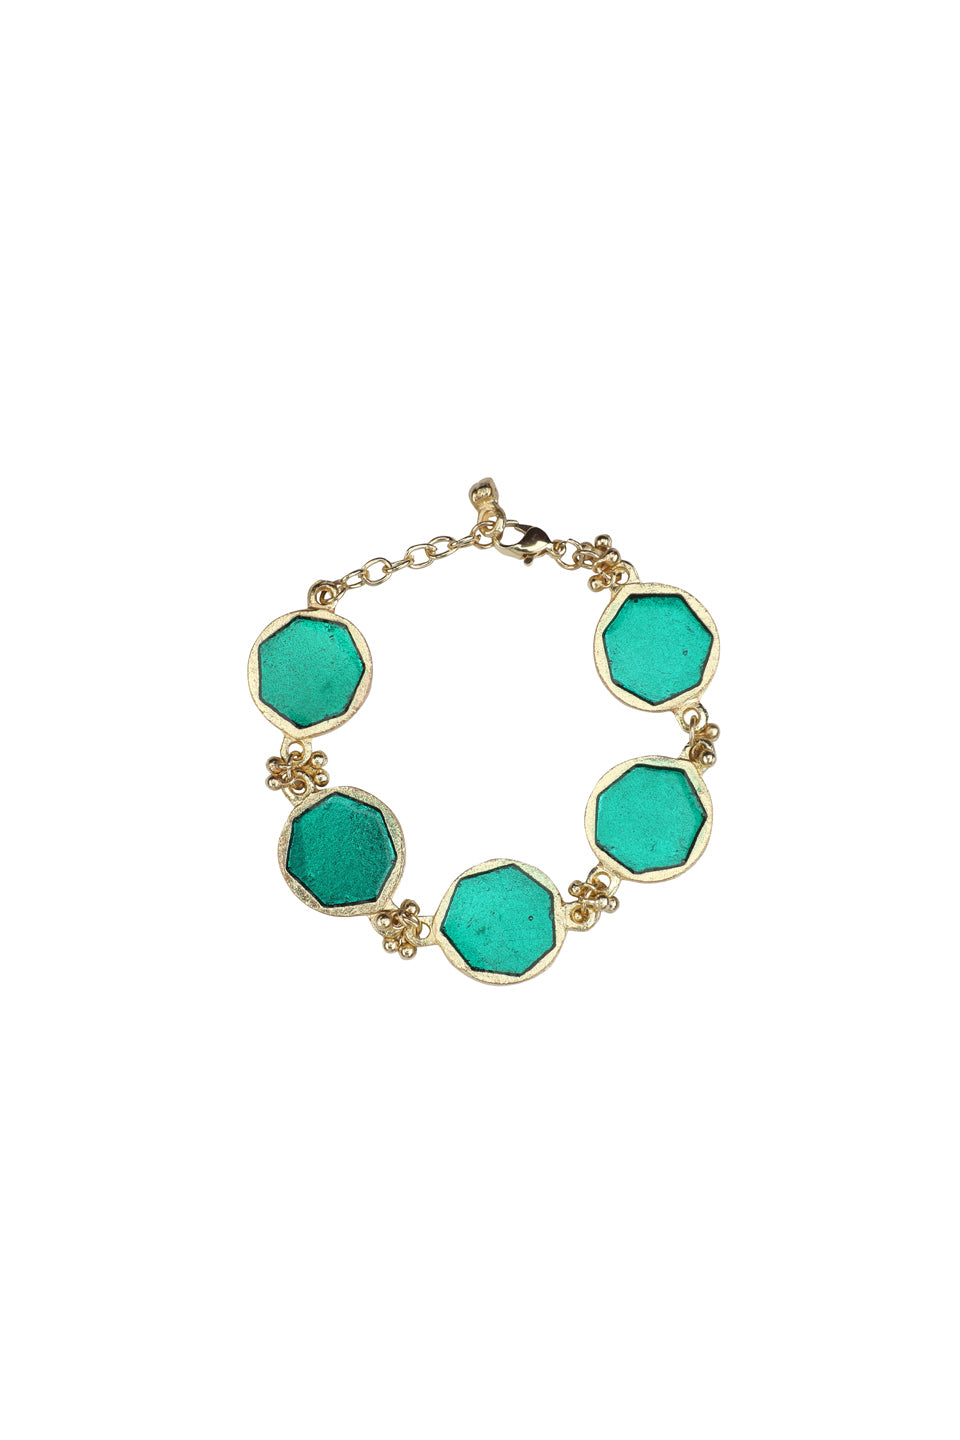 Turquoise Enamel Bracelet